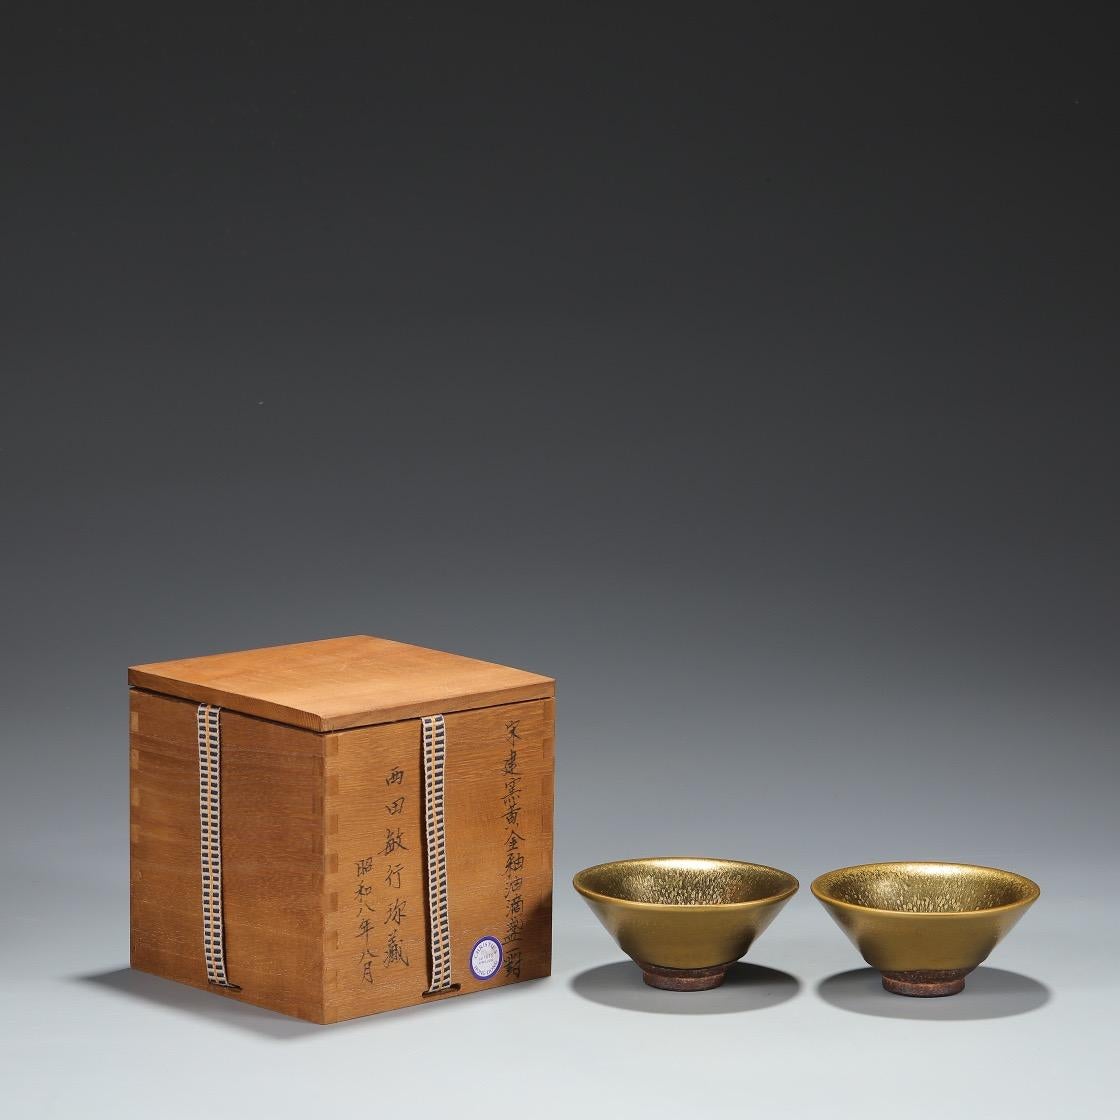 Cette paire de bols à huile à glaçure dorée de la collection ancienne de la dynastie des Song du Nord Jian Kiln est très rare et digne d'être collectionnée. 

Les fours Jian étaient situés à Jianyang, dans la province de Fujian, en Chine. Ils